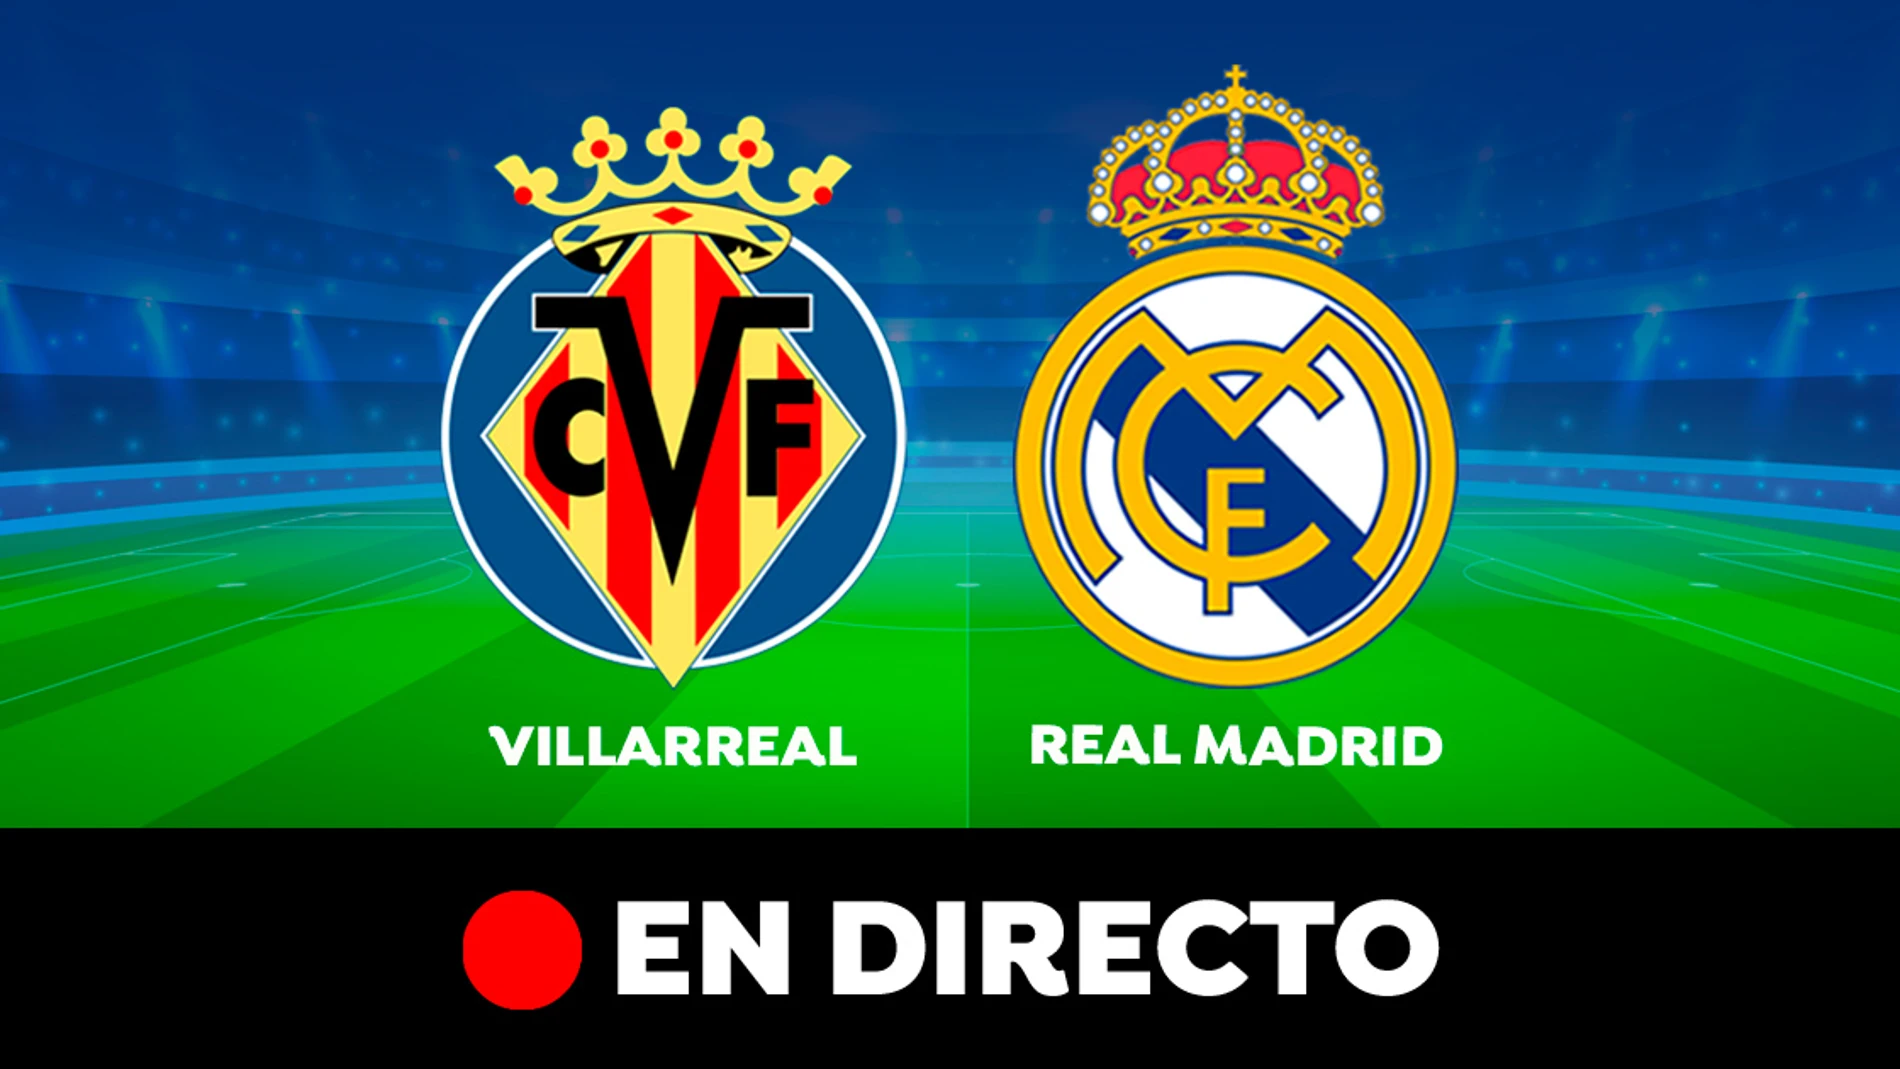 Villarreal vs Real Madrid EN DIRECTO: Resultado, goles y partido de hoy la Liga hoy